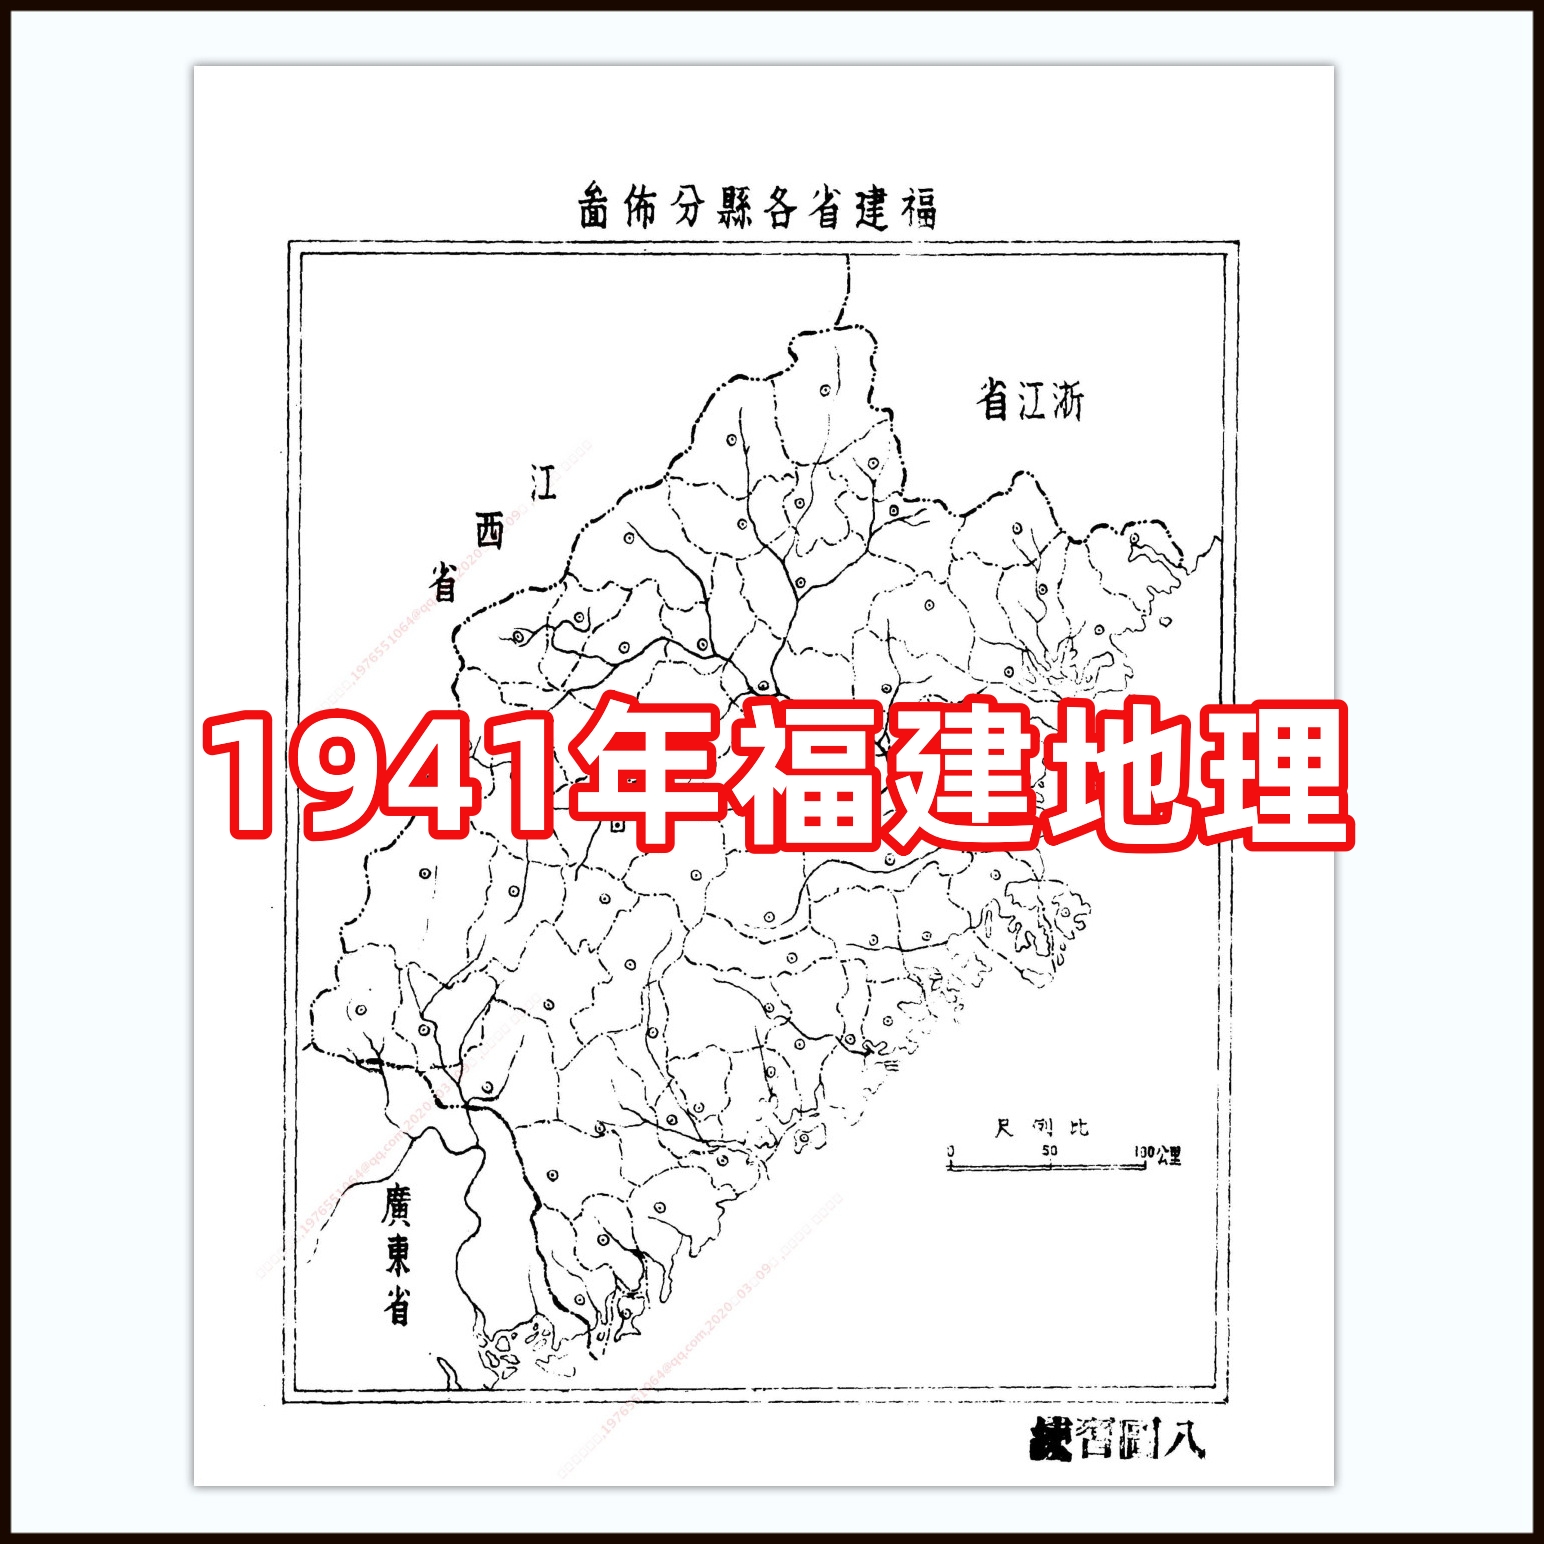 1941年福建地理 电子图片素材135张 59MB